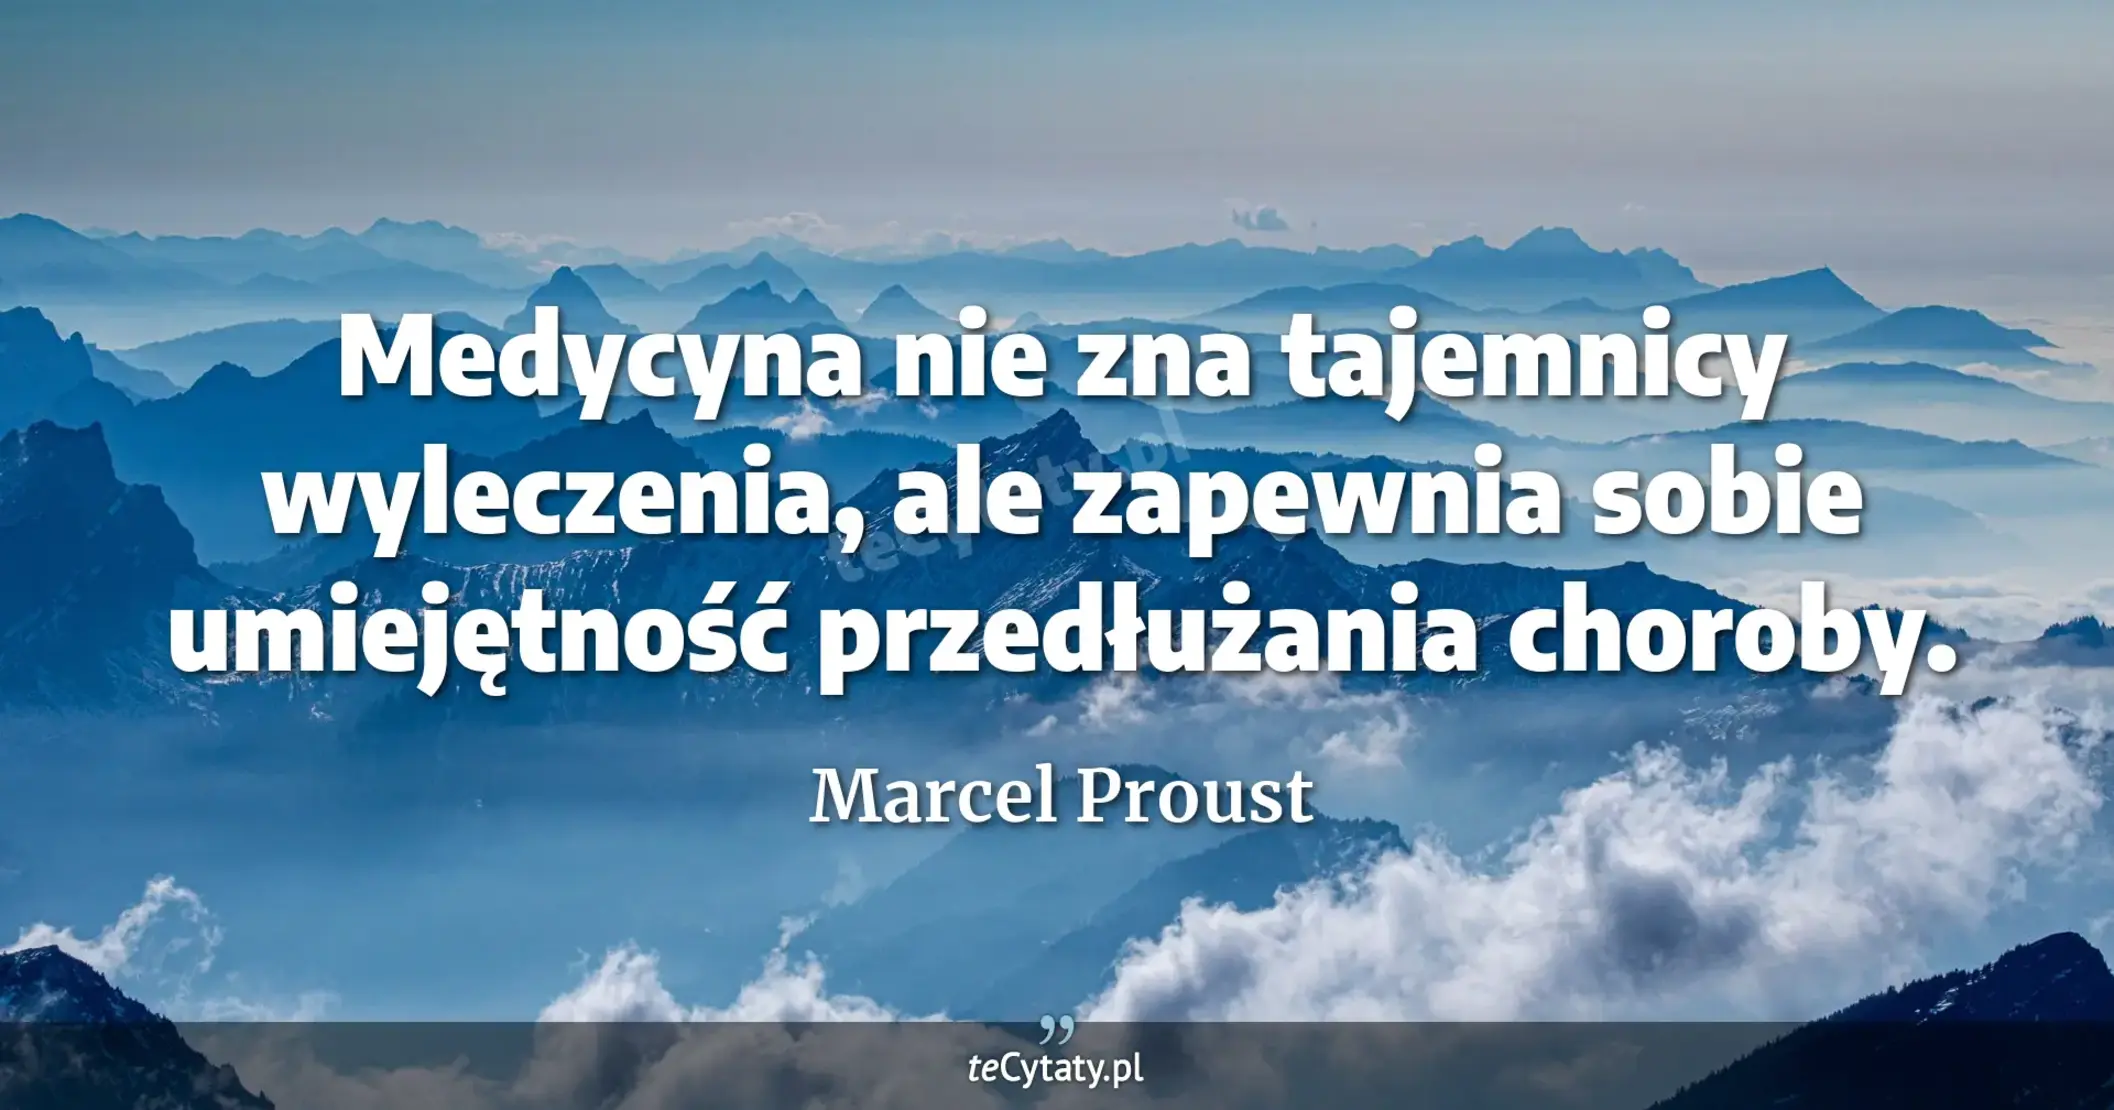 Medycyna nie zna tajemnicy wyleczenia, ale zapewnia sobie umiejętność przedłużania choroby. - Marcel Proust